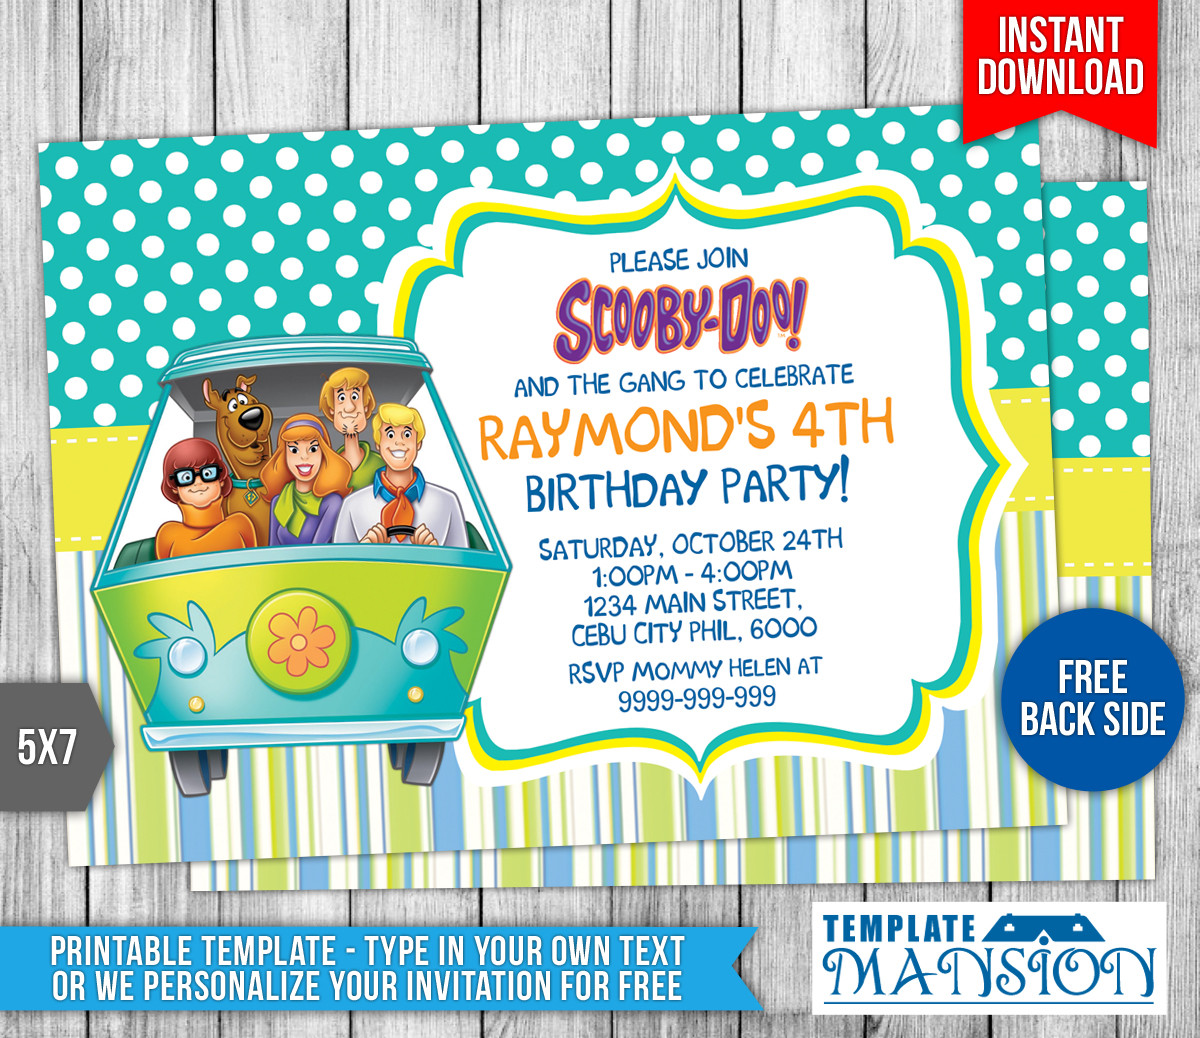 Scooby Doo Birthday Invitations
 Scooby Doo Birthday Invitation Template 1 by